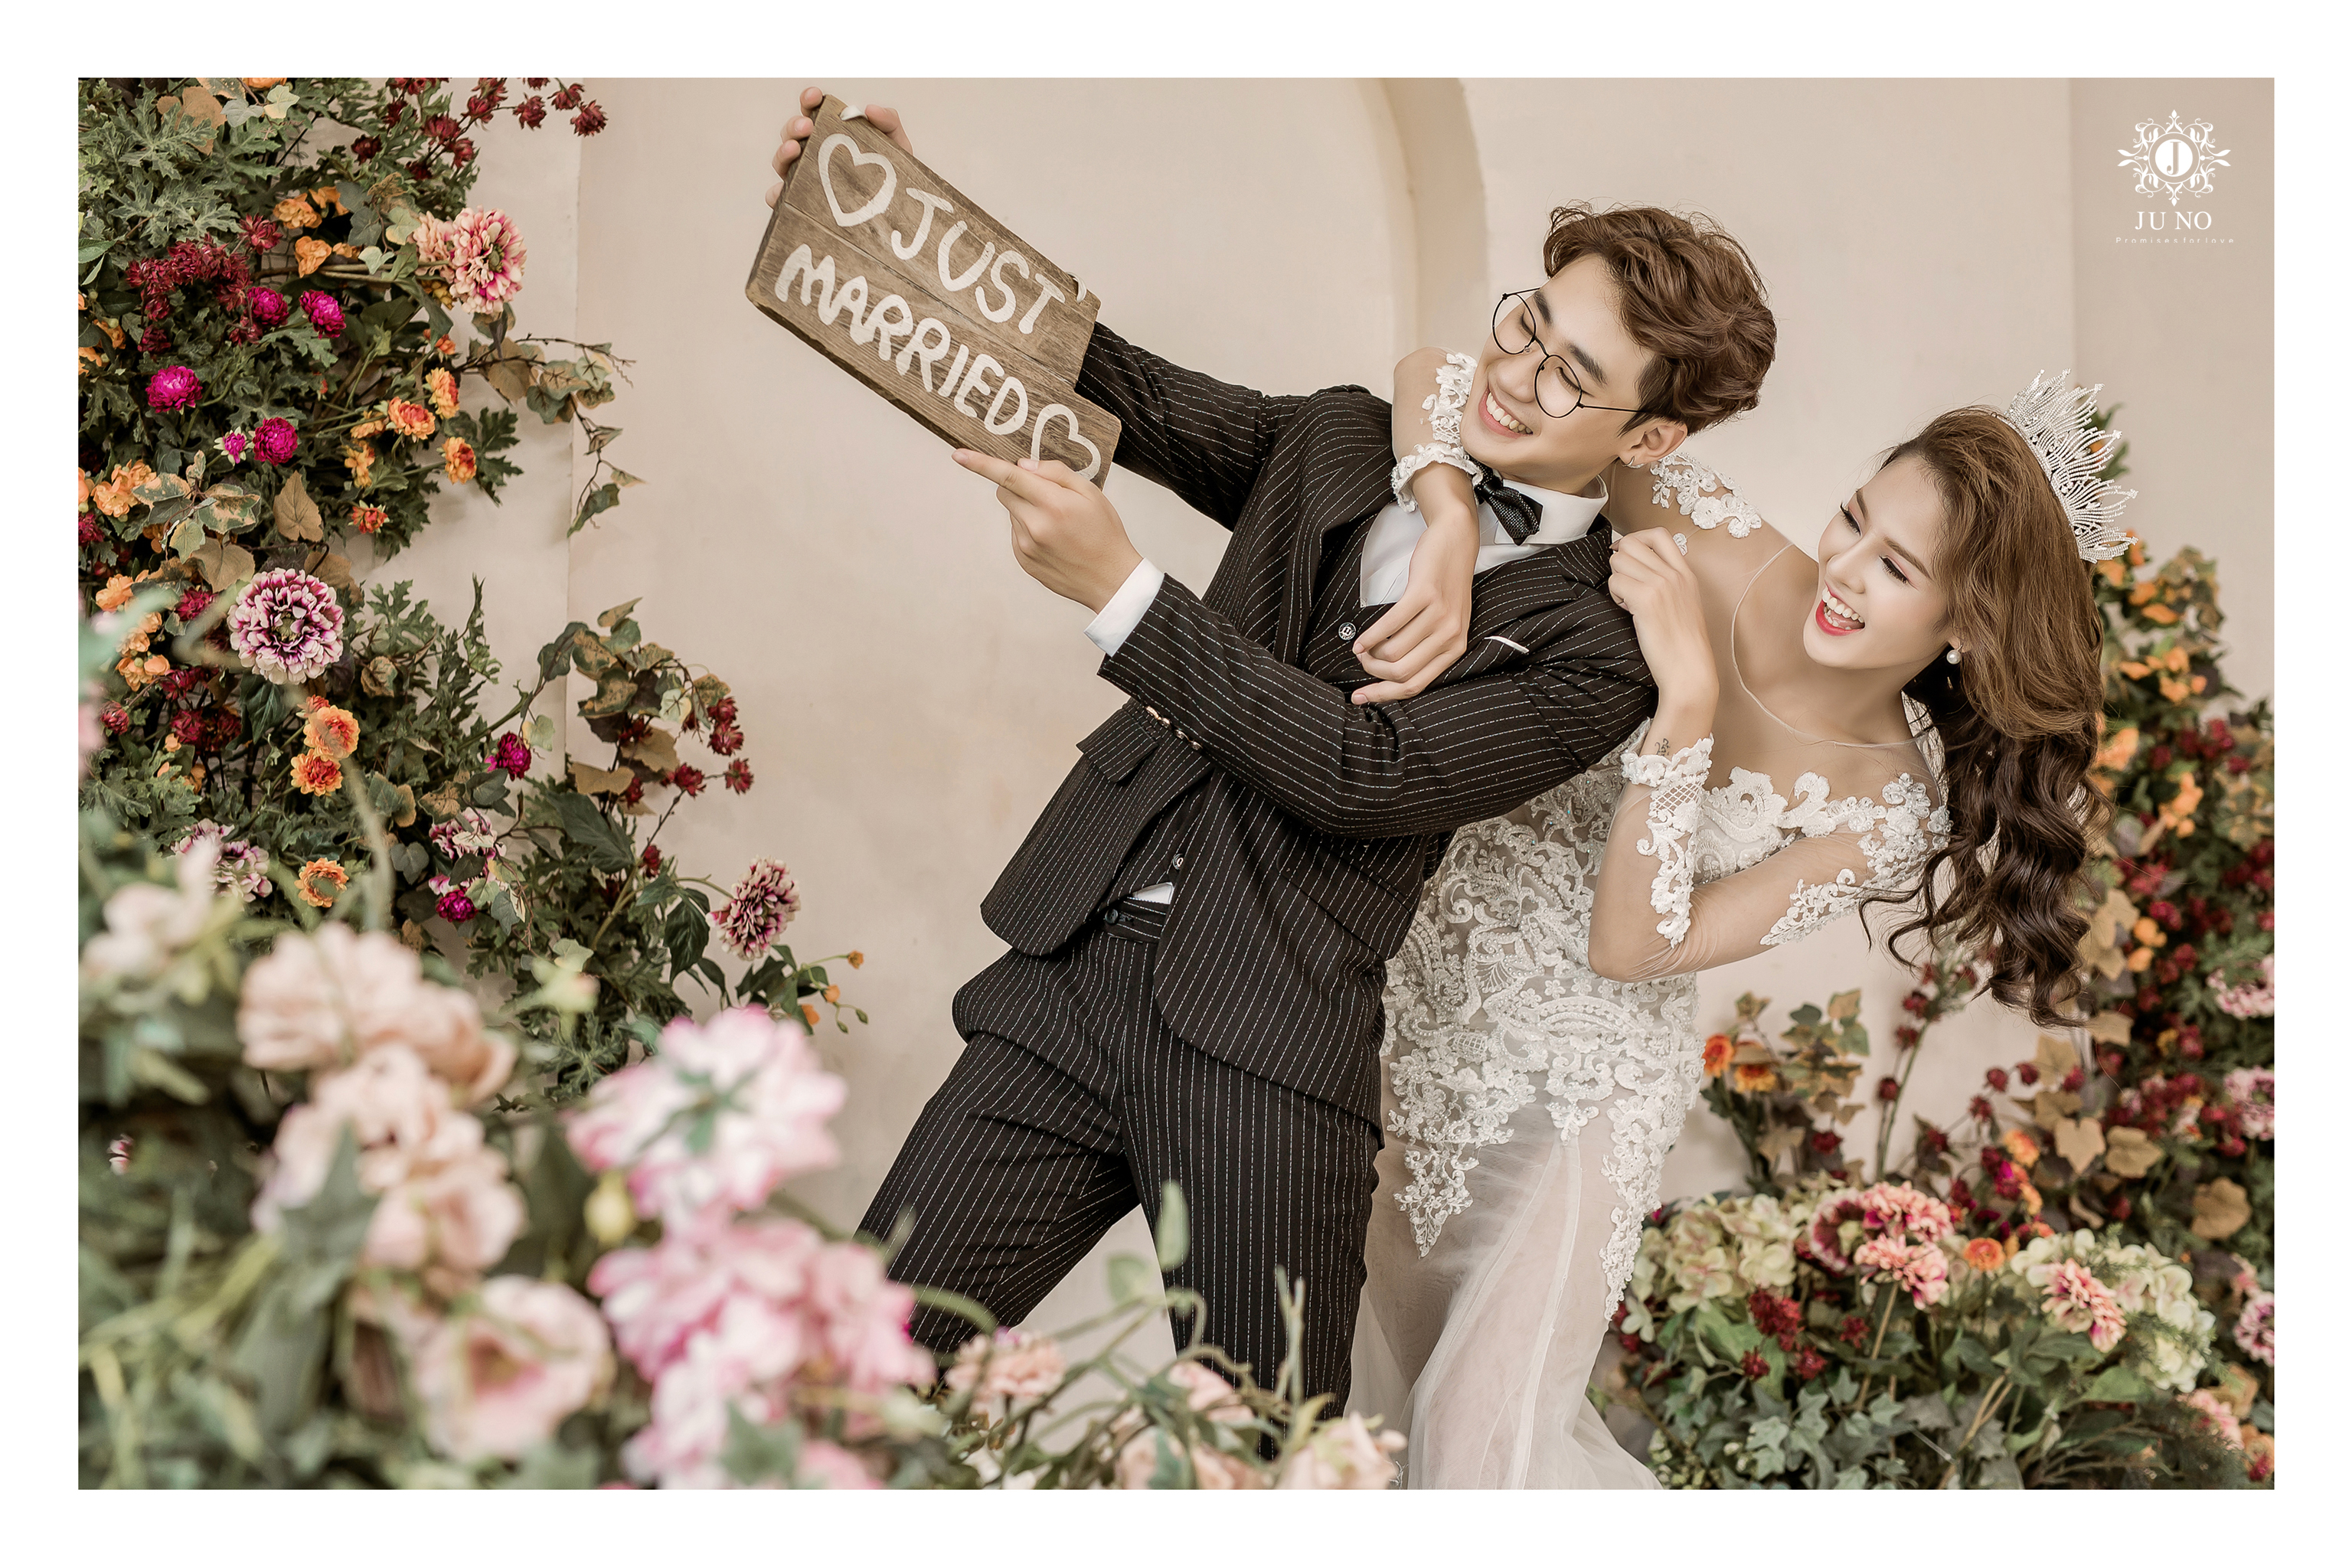 Nếu bạn đang ấp ủ một đám cưới trong tương lai, hãy tìm đến ngay Studio chụp ảnh cưới tại Hà Nội để chụp những bức ảnh đẹp nhất. Được trang bị đầy đủ thiết bị hiện đại cùng không gian sang trọng, Studio chụp ảnh cưới Hà Nội chắc chắn sẽ làm hài lòng mọi khách hàng.